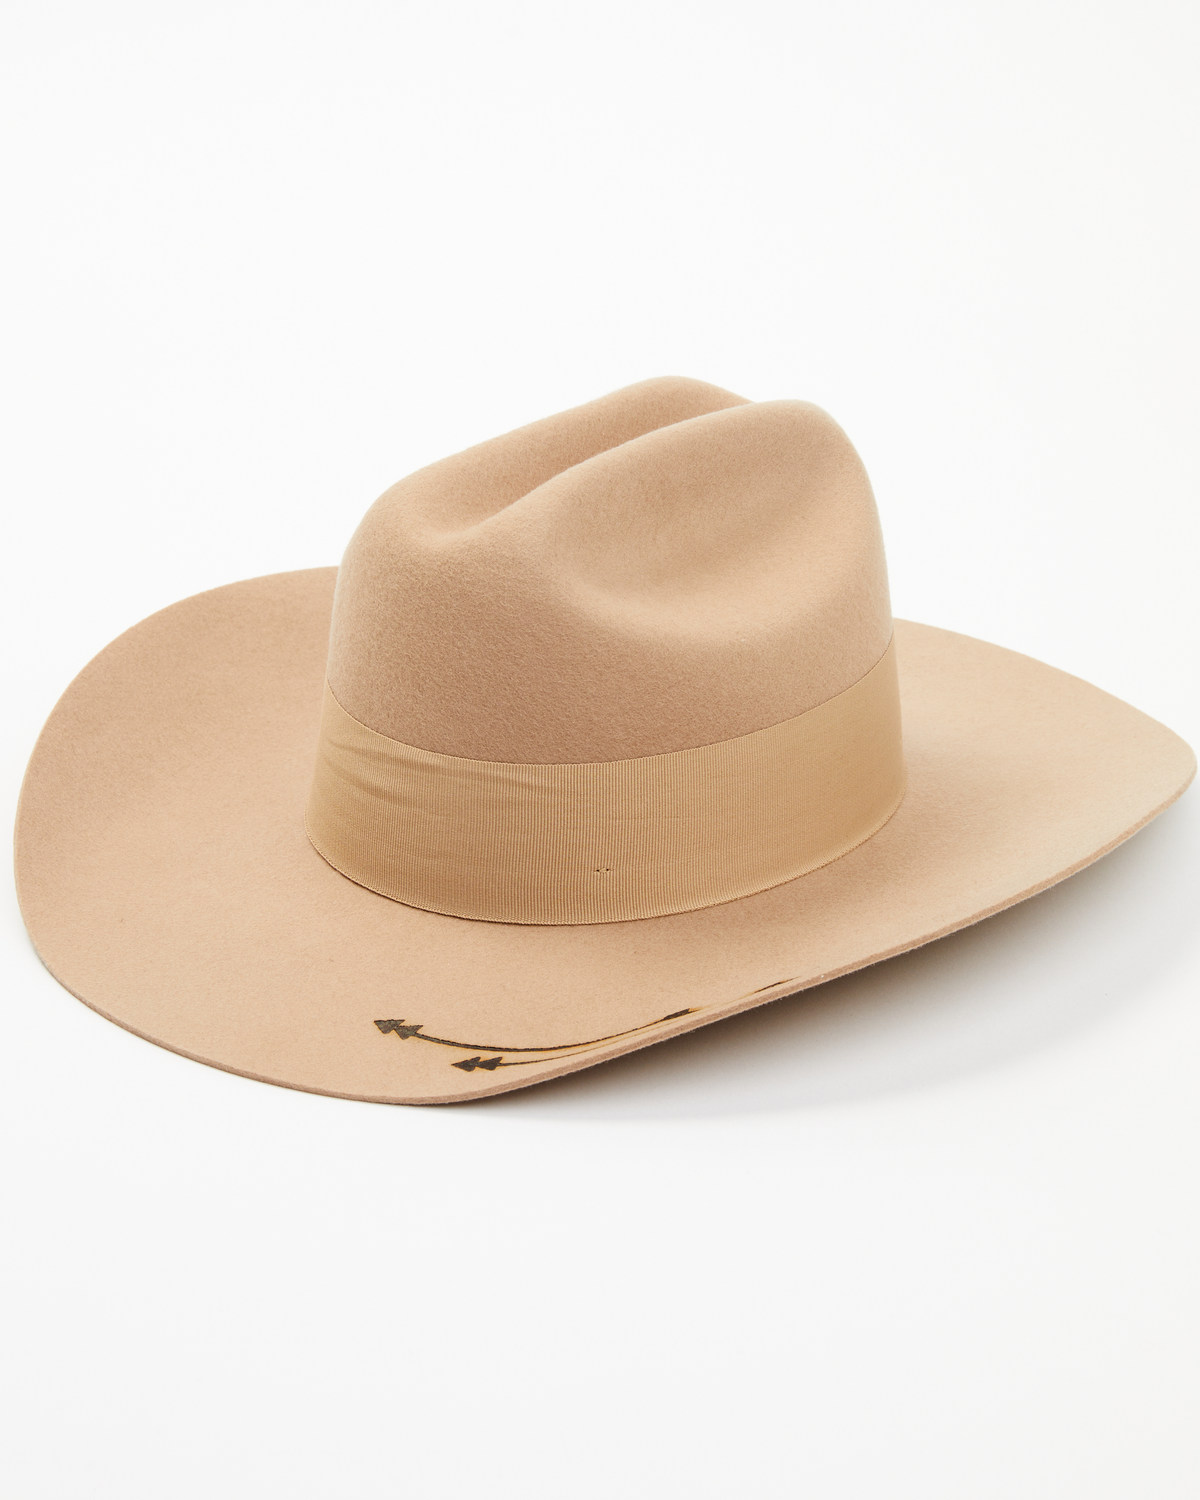 Idyllwind Women's Cavalier Canyon Felt Cowboy Hat